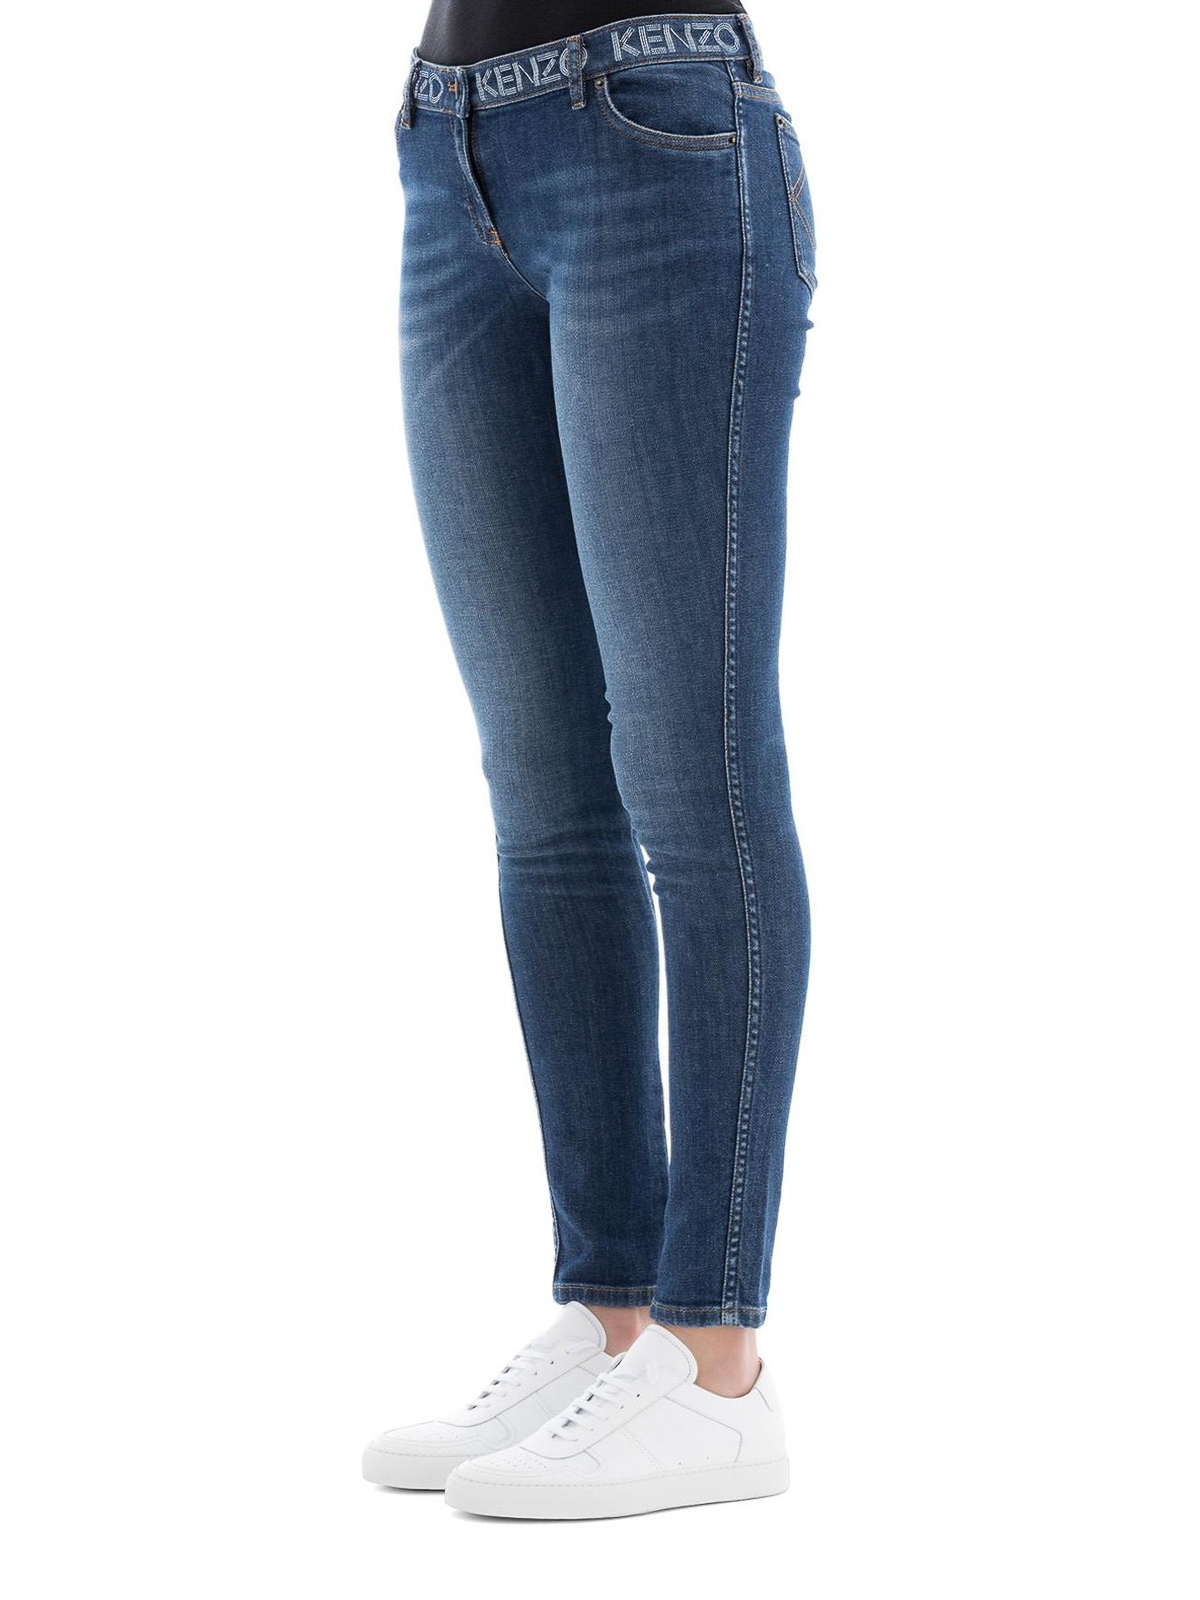 kenzo skinny jeans